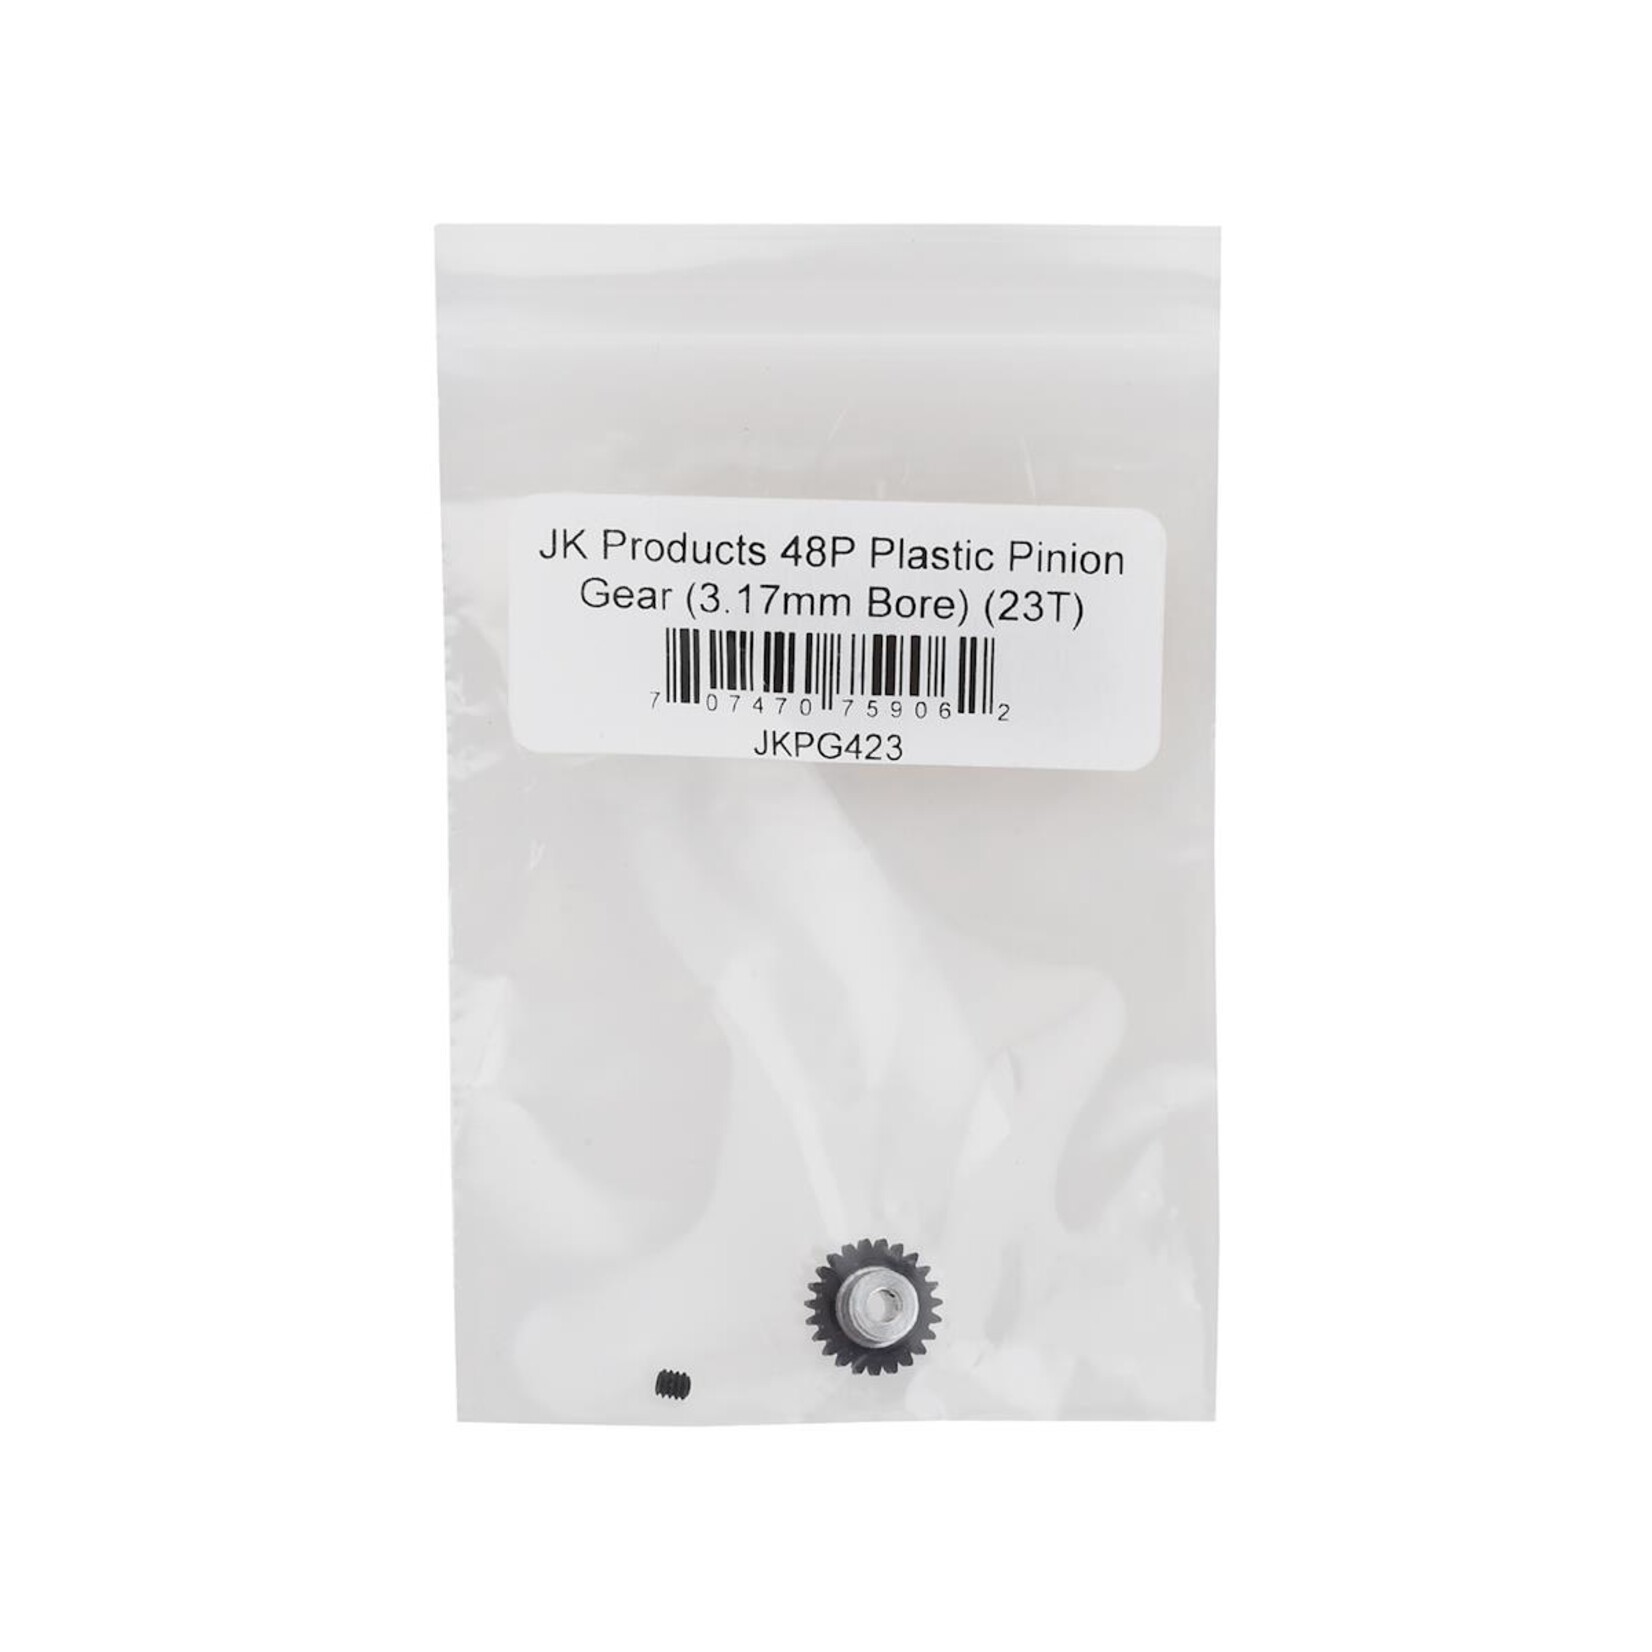 JK Products JK Products 48P Plastic Pinion Gear (3.17mm Bore) (23T) #JKPG423